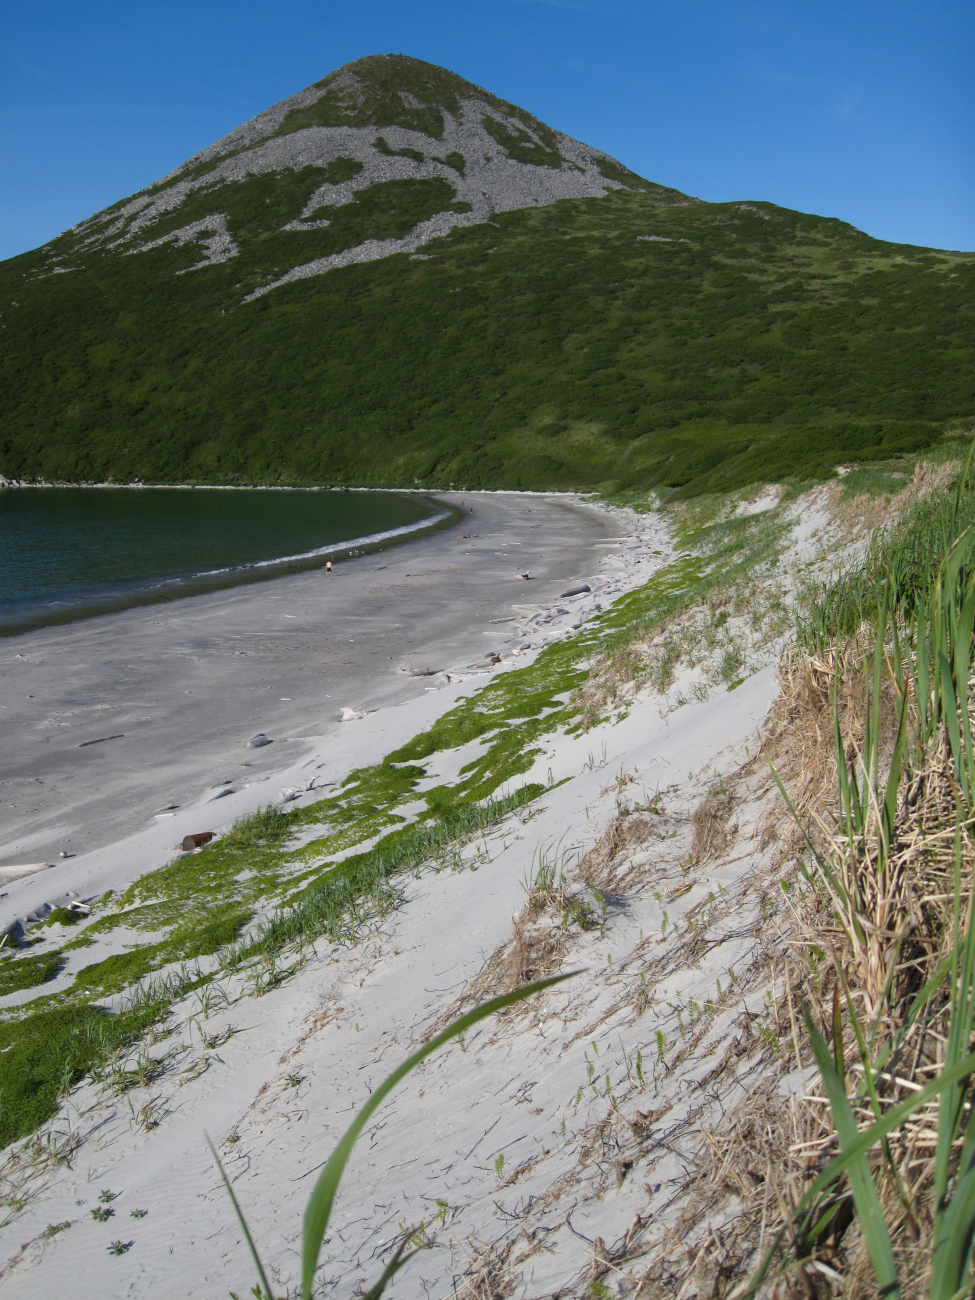 A nice sand beach with dunes behind on a Shumagin Island beach